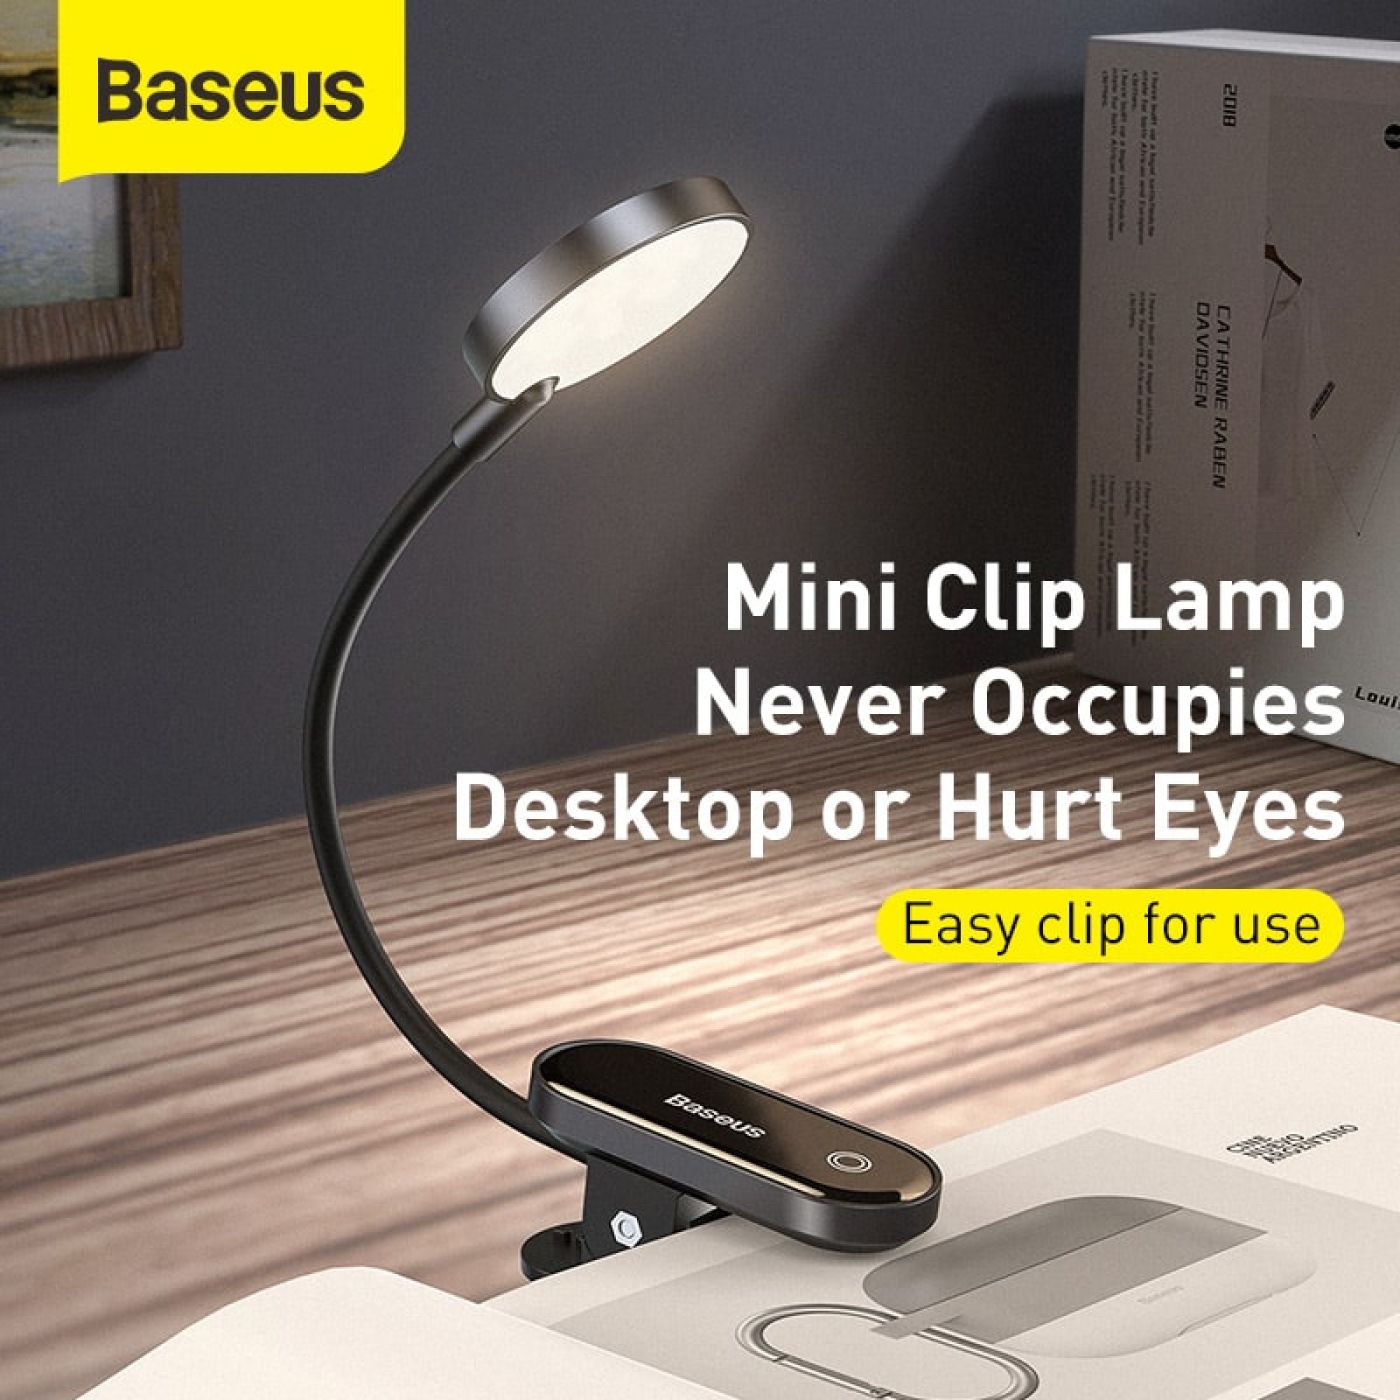 Đèn đọc sách mini, pin sạc tiện dụng Baseus Comfort Reading Mini Clip Lamp